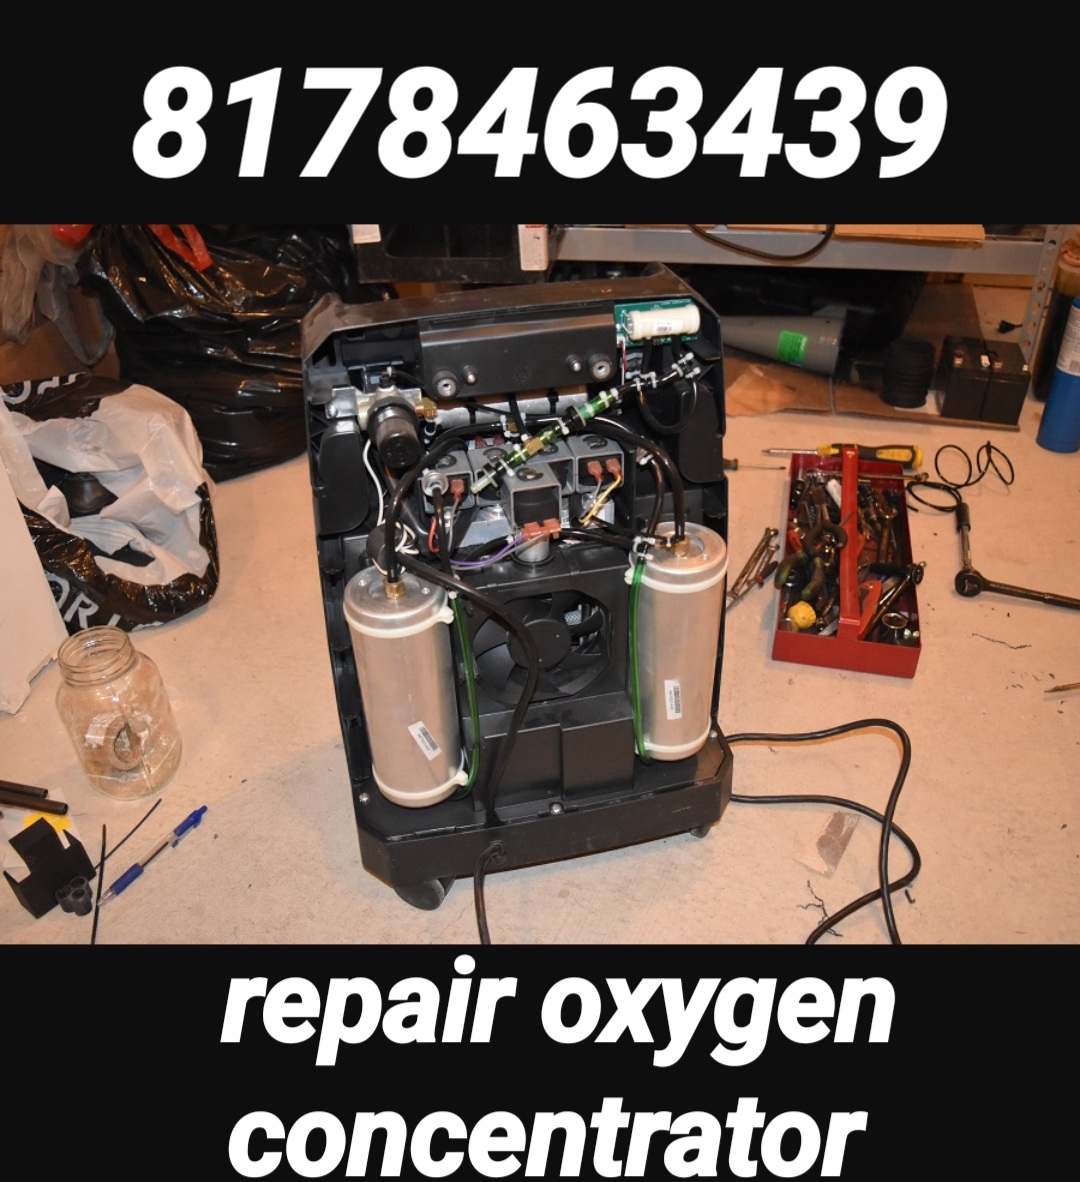 Oxygen Machine Repair In Delhi Ncr 8178463439